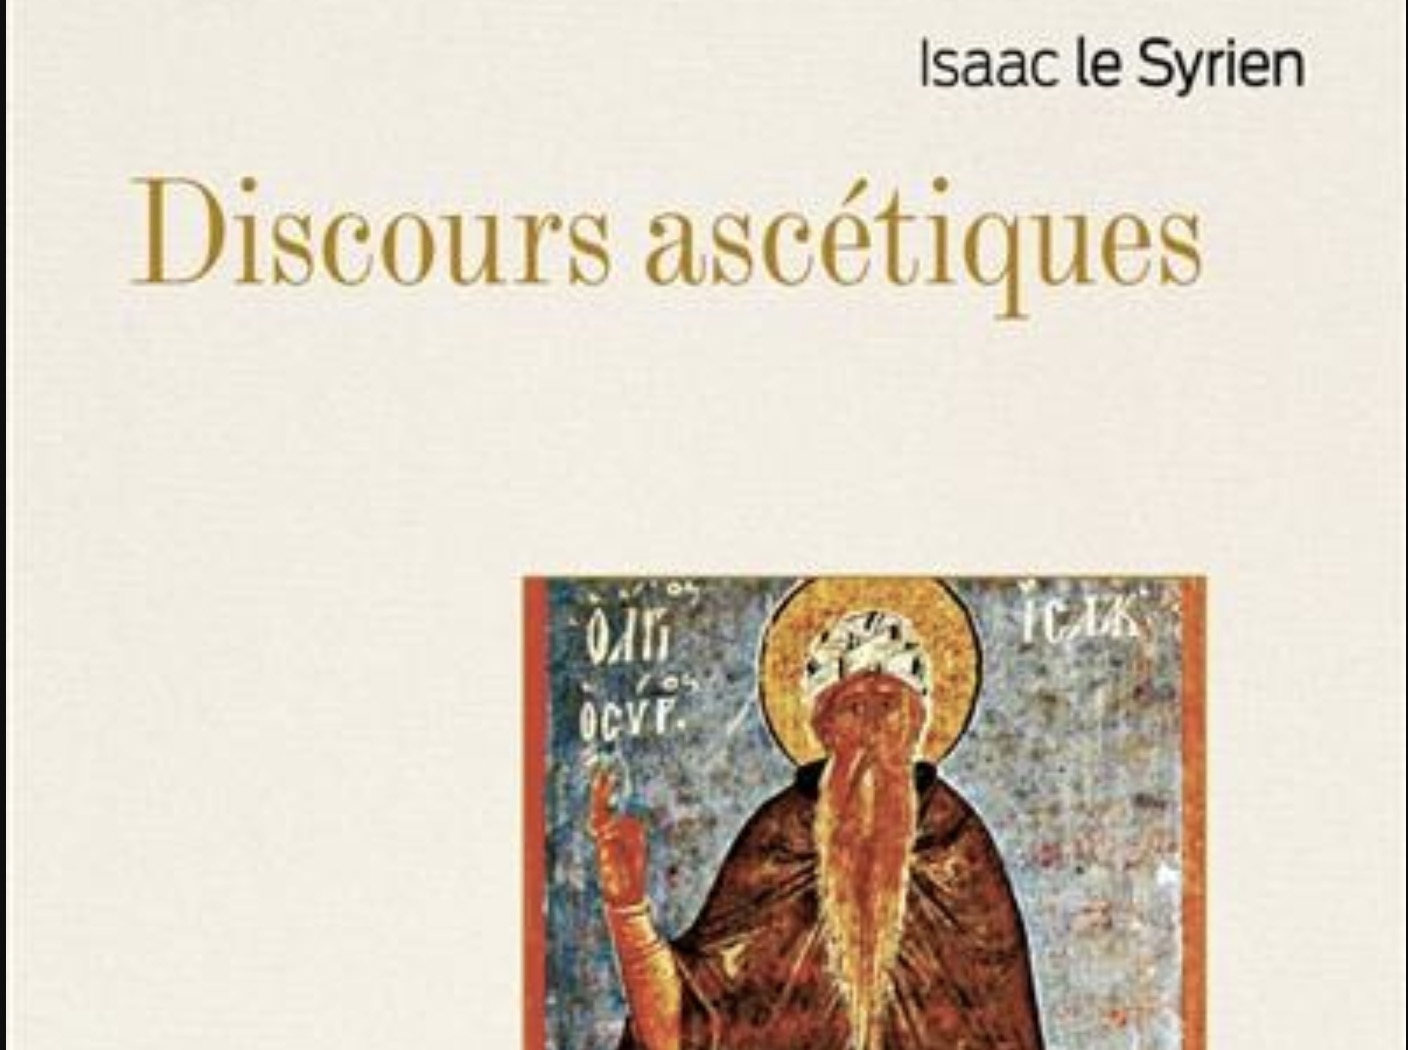 Vient de paraître : “Discours ascétiques” de saint Isaac le Syrien